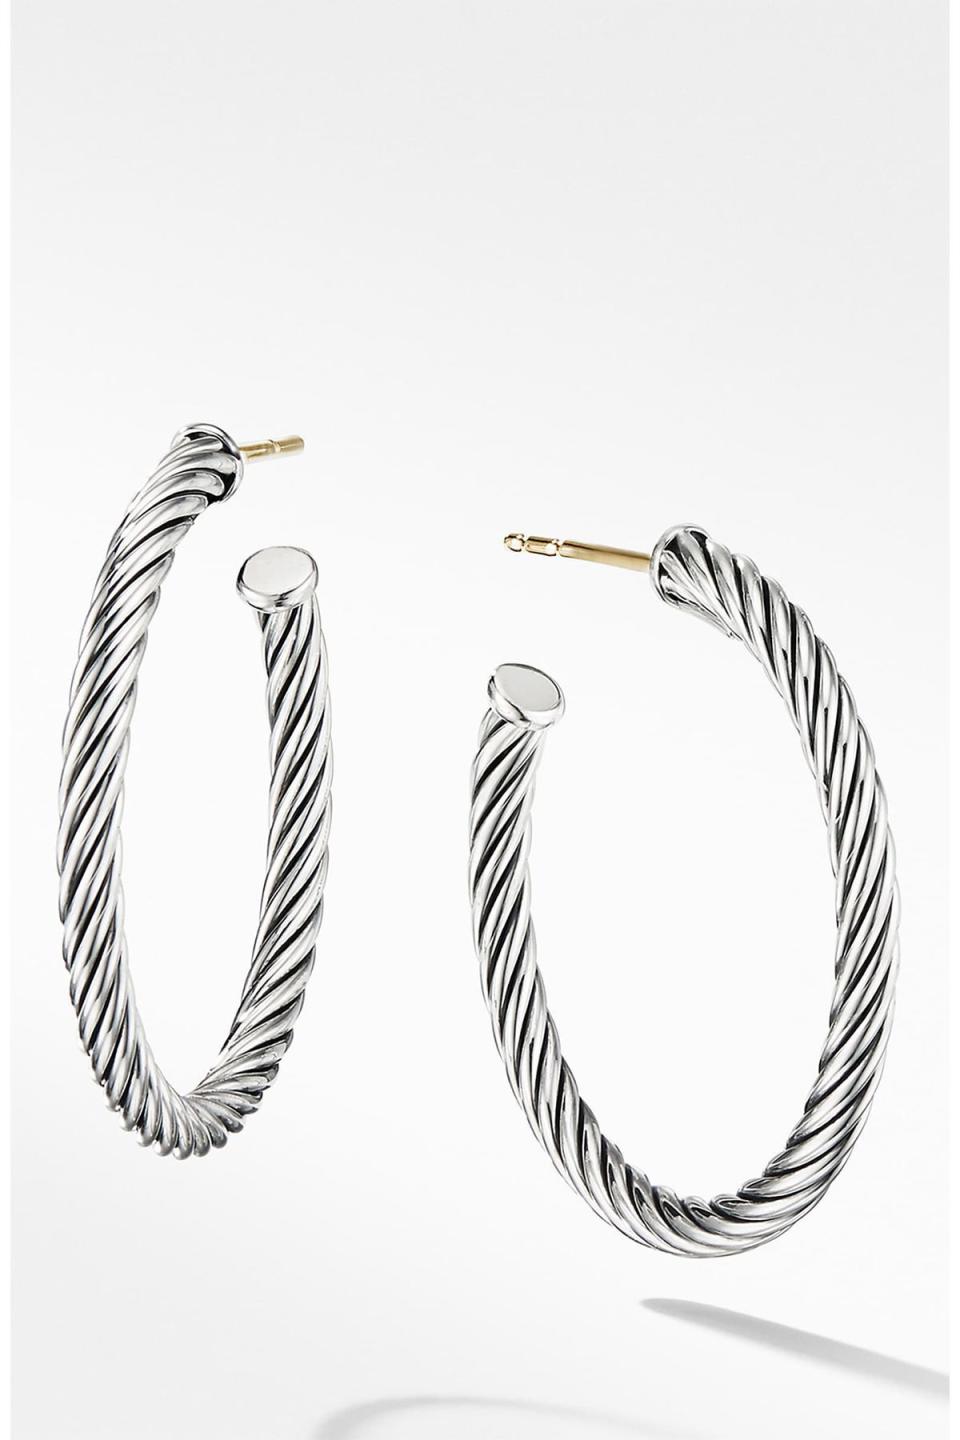 1) Cable Loop Hoop Earrings